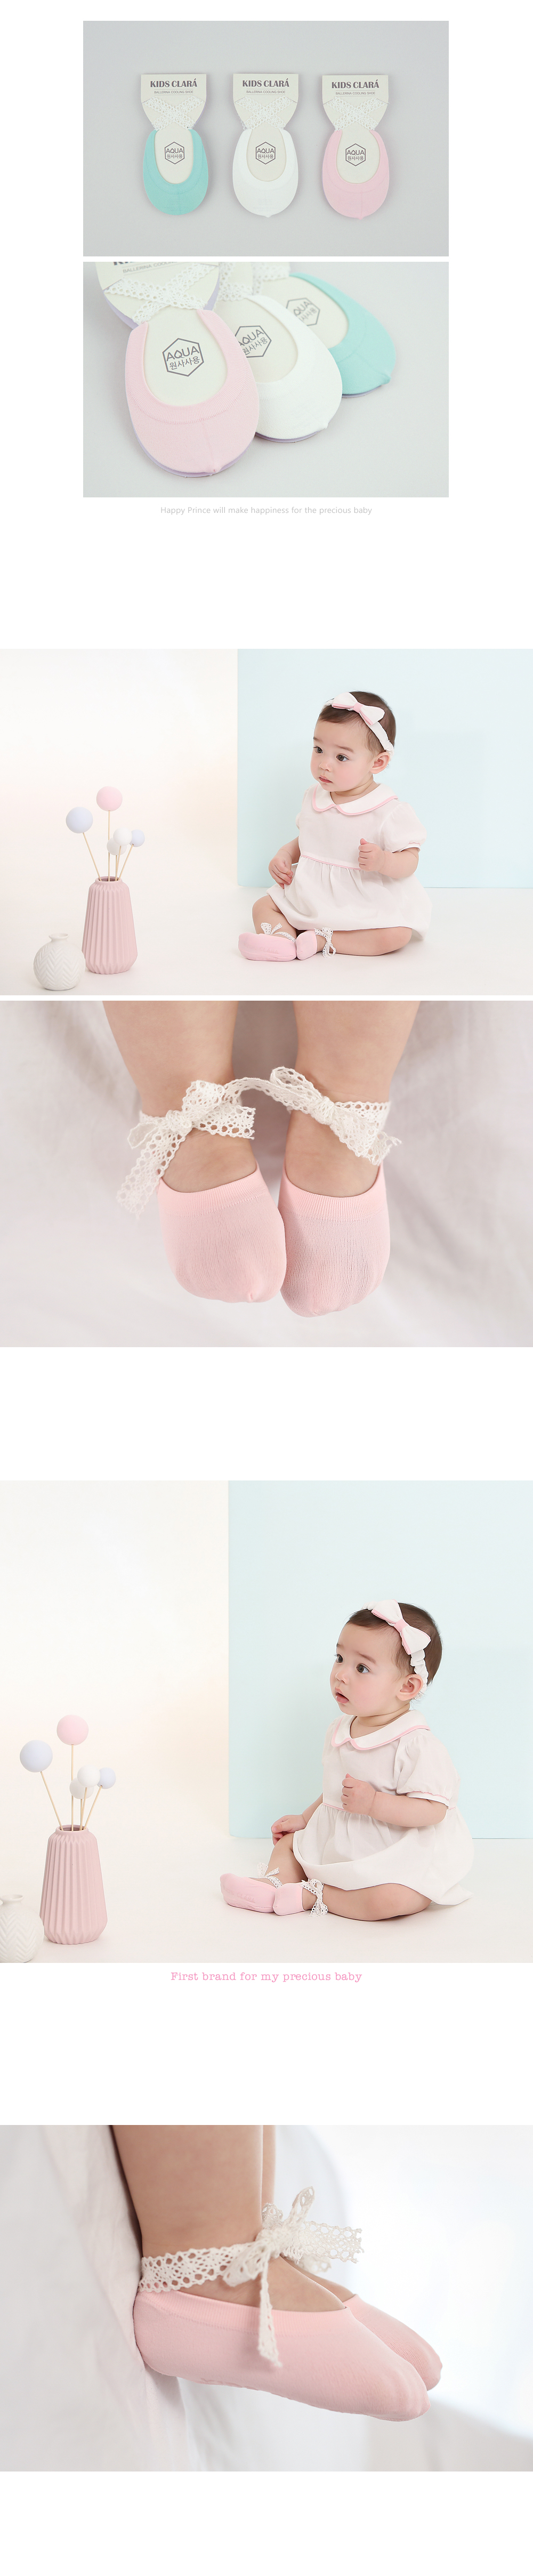 韓國 Happy Prince Ballerina女嬰童涼感蕾絲芭蕾短襪 蒂芬妮綠